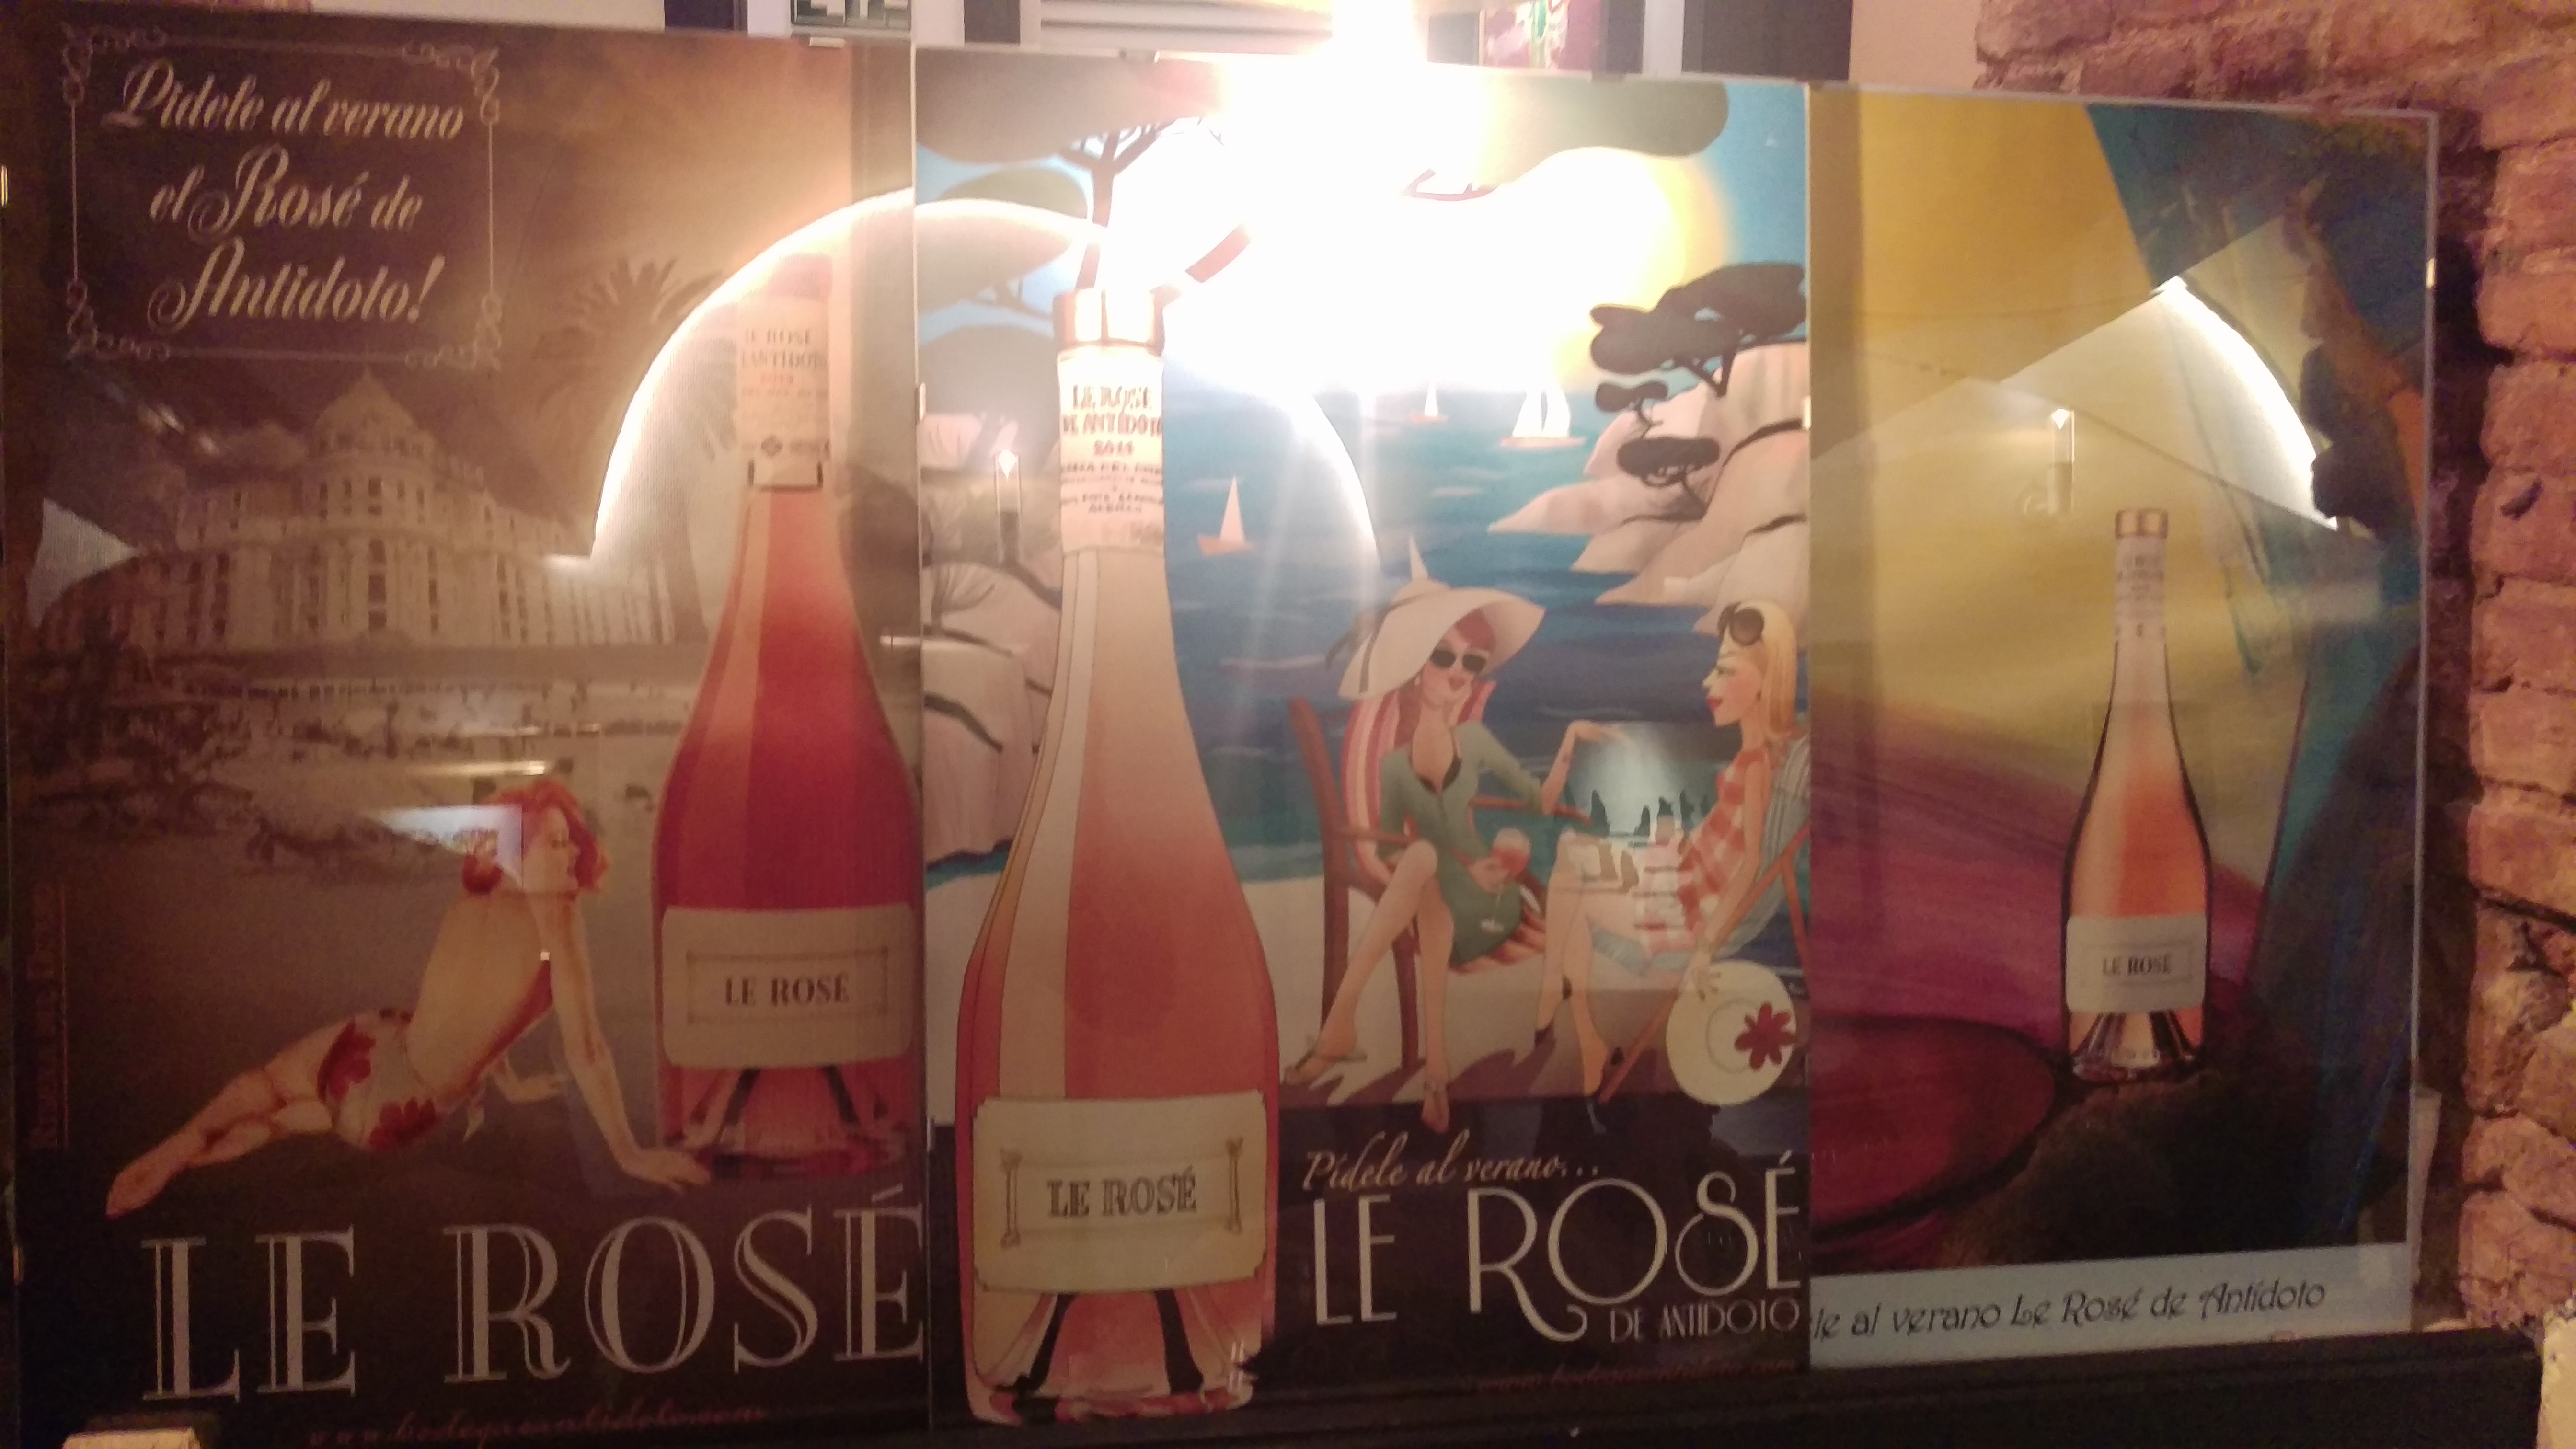 Roselito y Le Rosé, palabras mayores! (1ª parte)